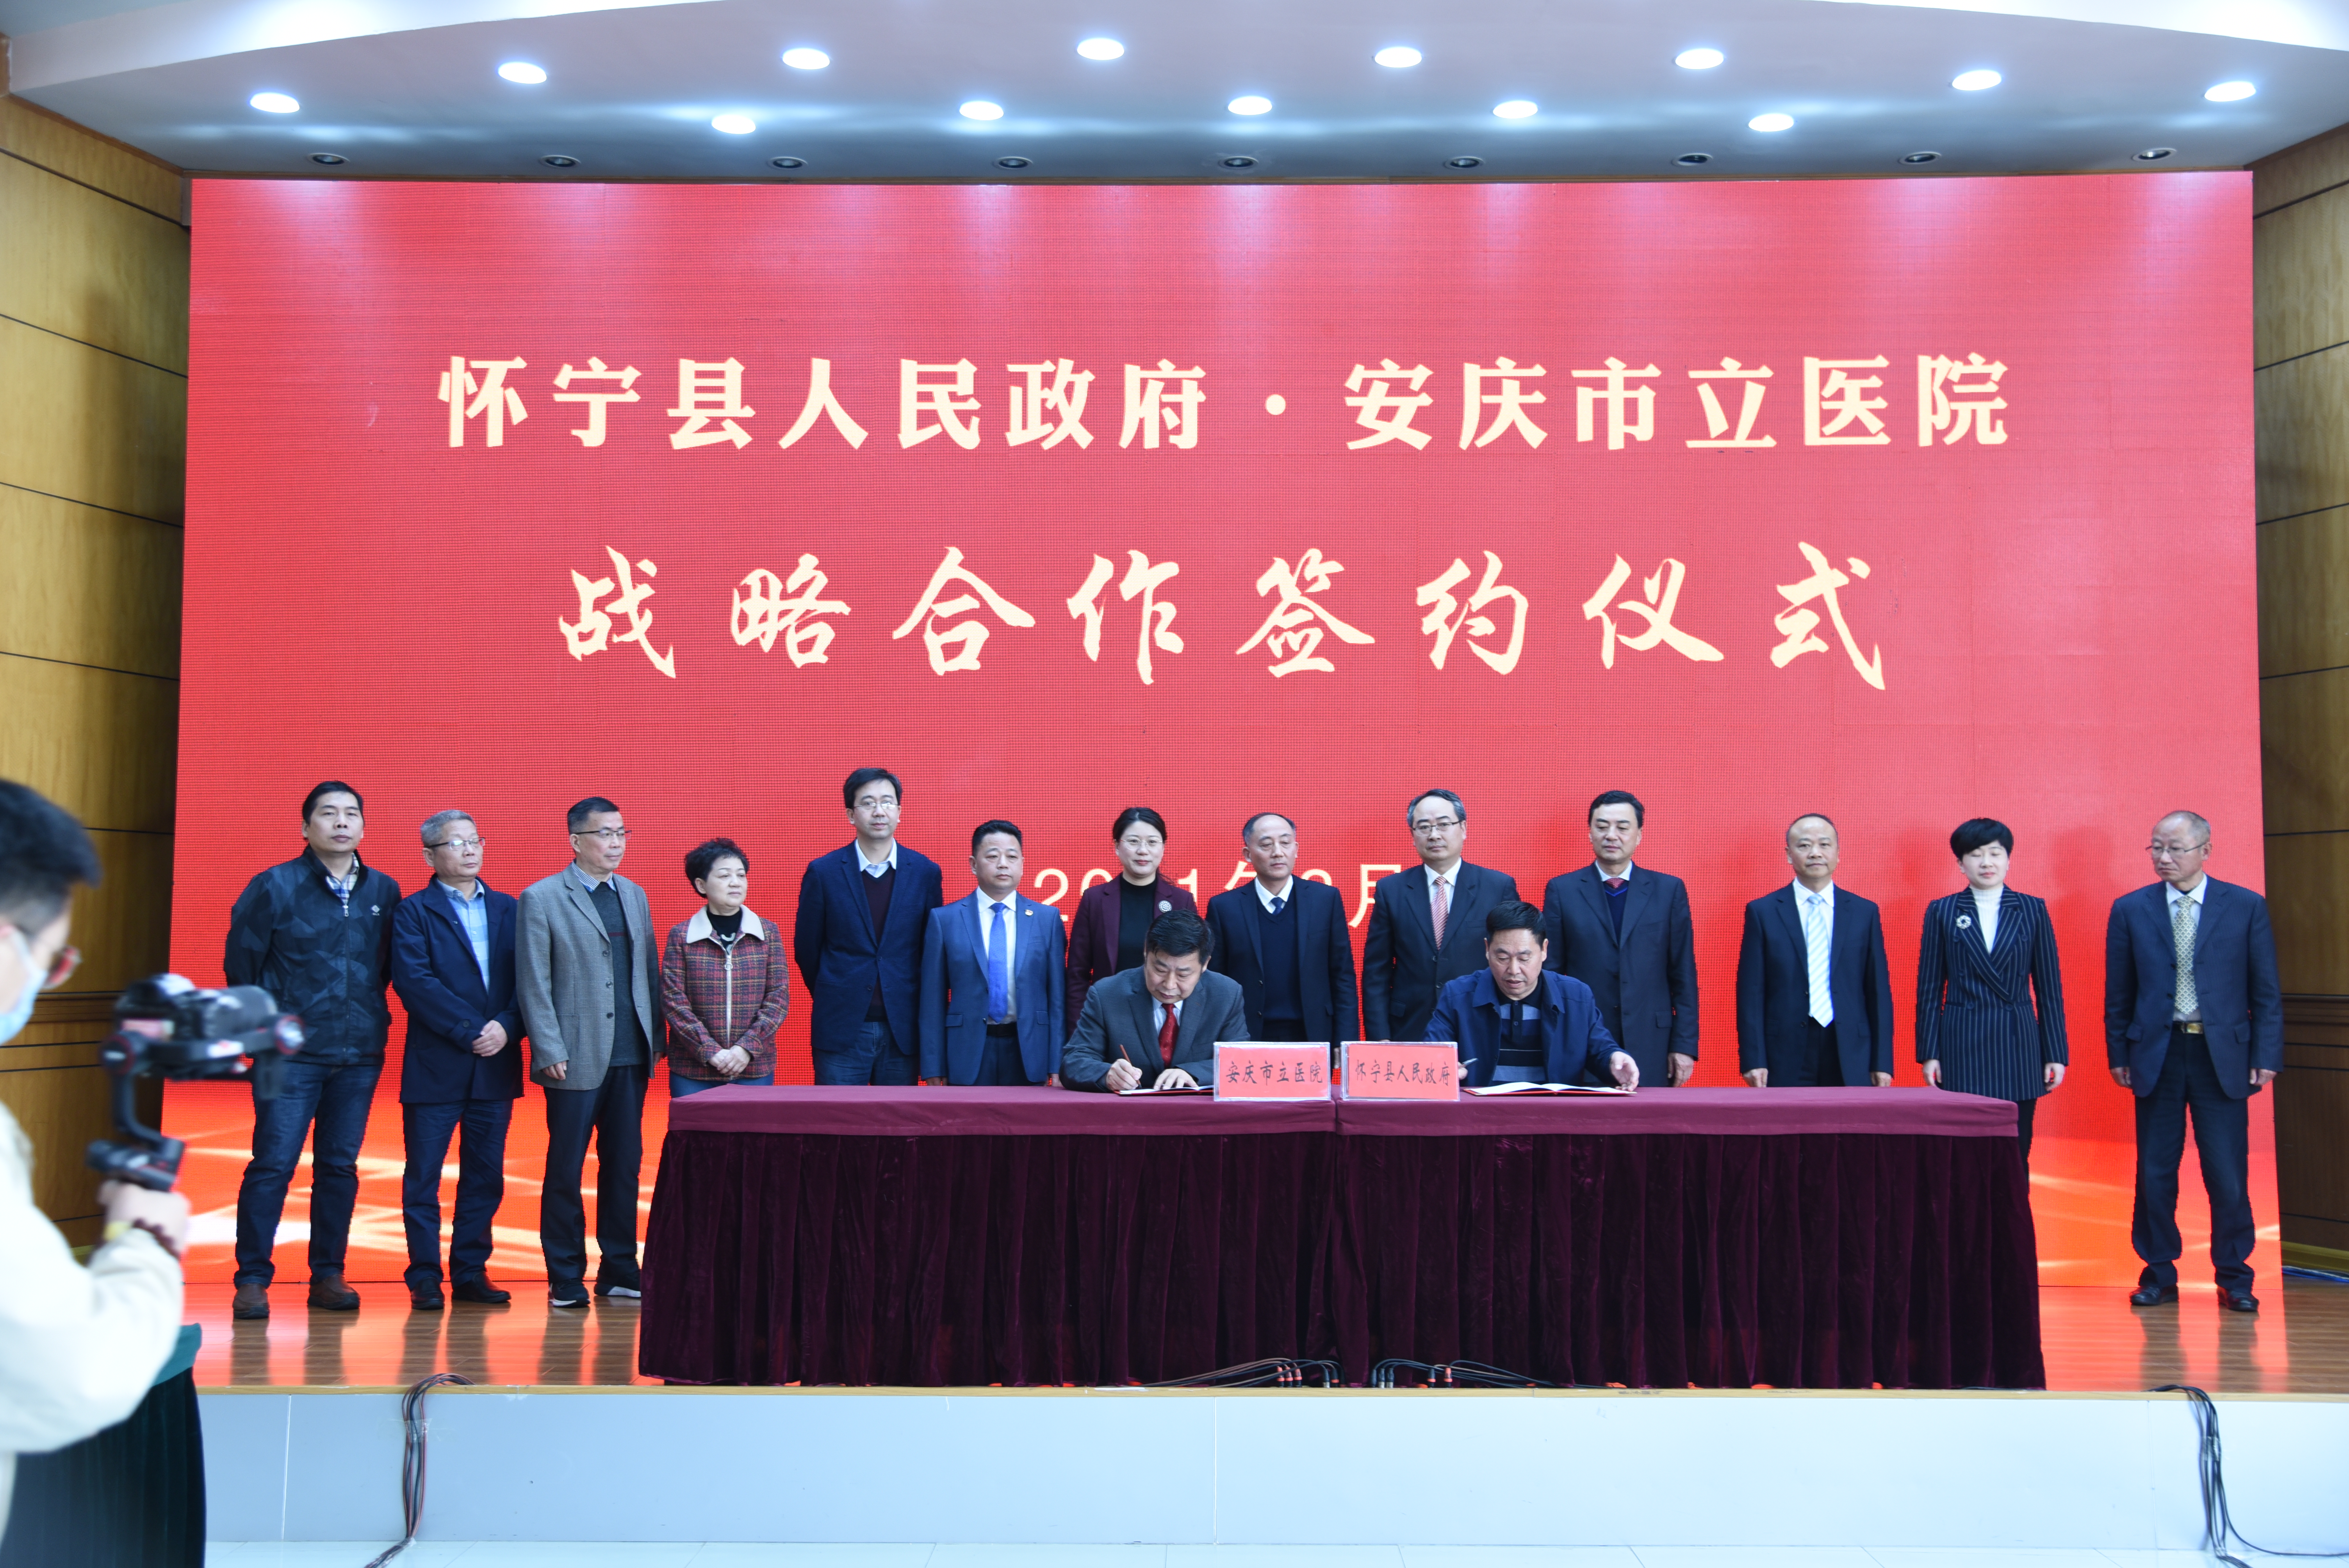 安庆市立医院与怀宁县人民政府签订战略合作协议